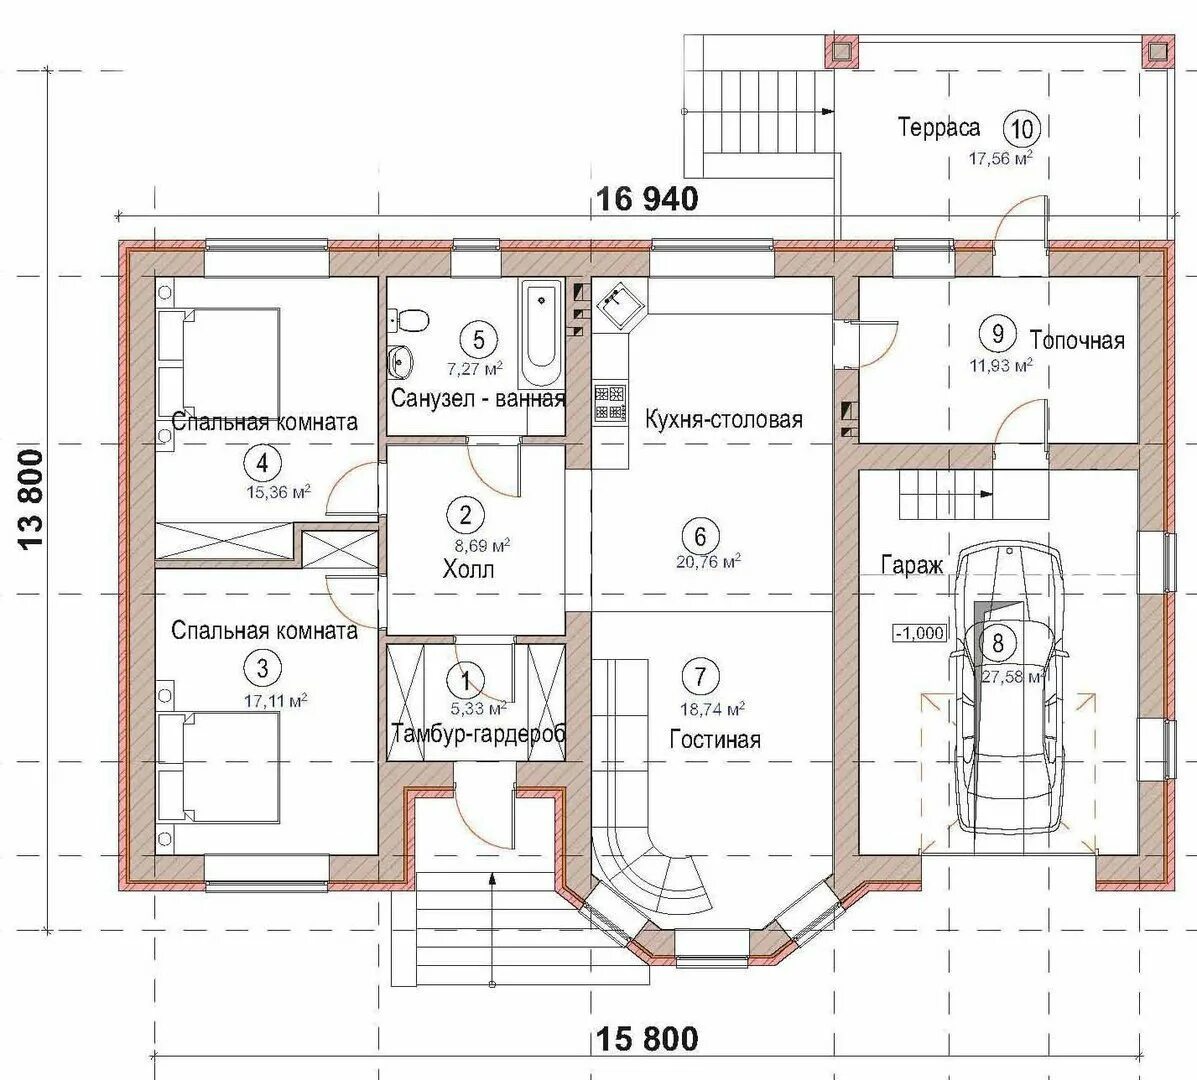 Чертеж 1 этажного дома с размерами. Чертёж дома с размерами одноэтажный. План дома чертеж с размерами одноэтажный. Чертежи загородных домов